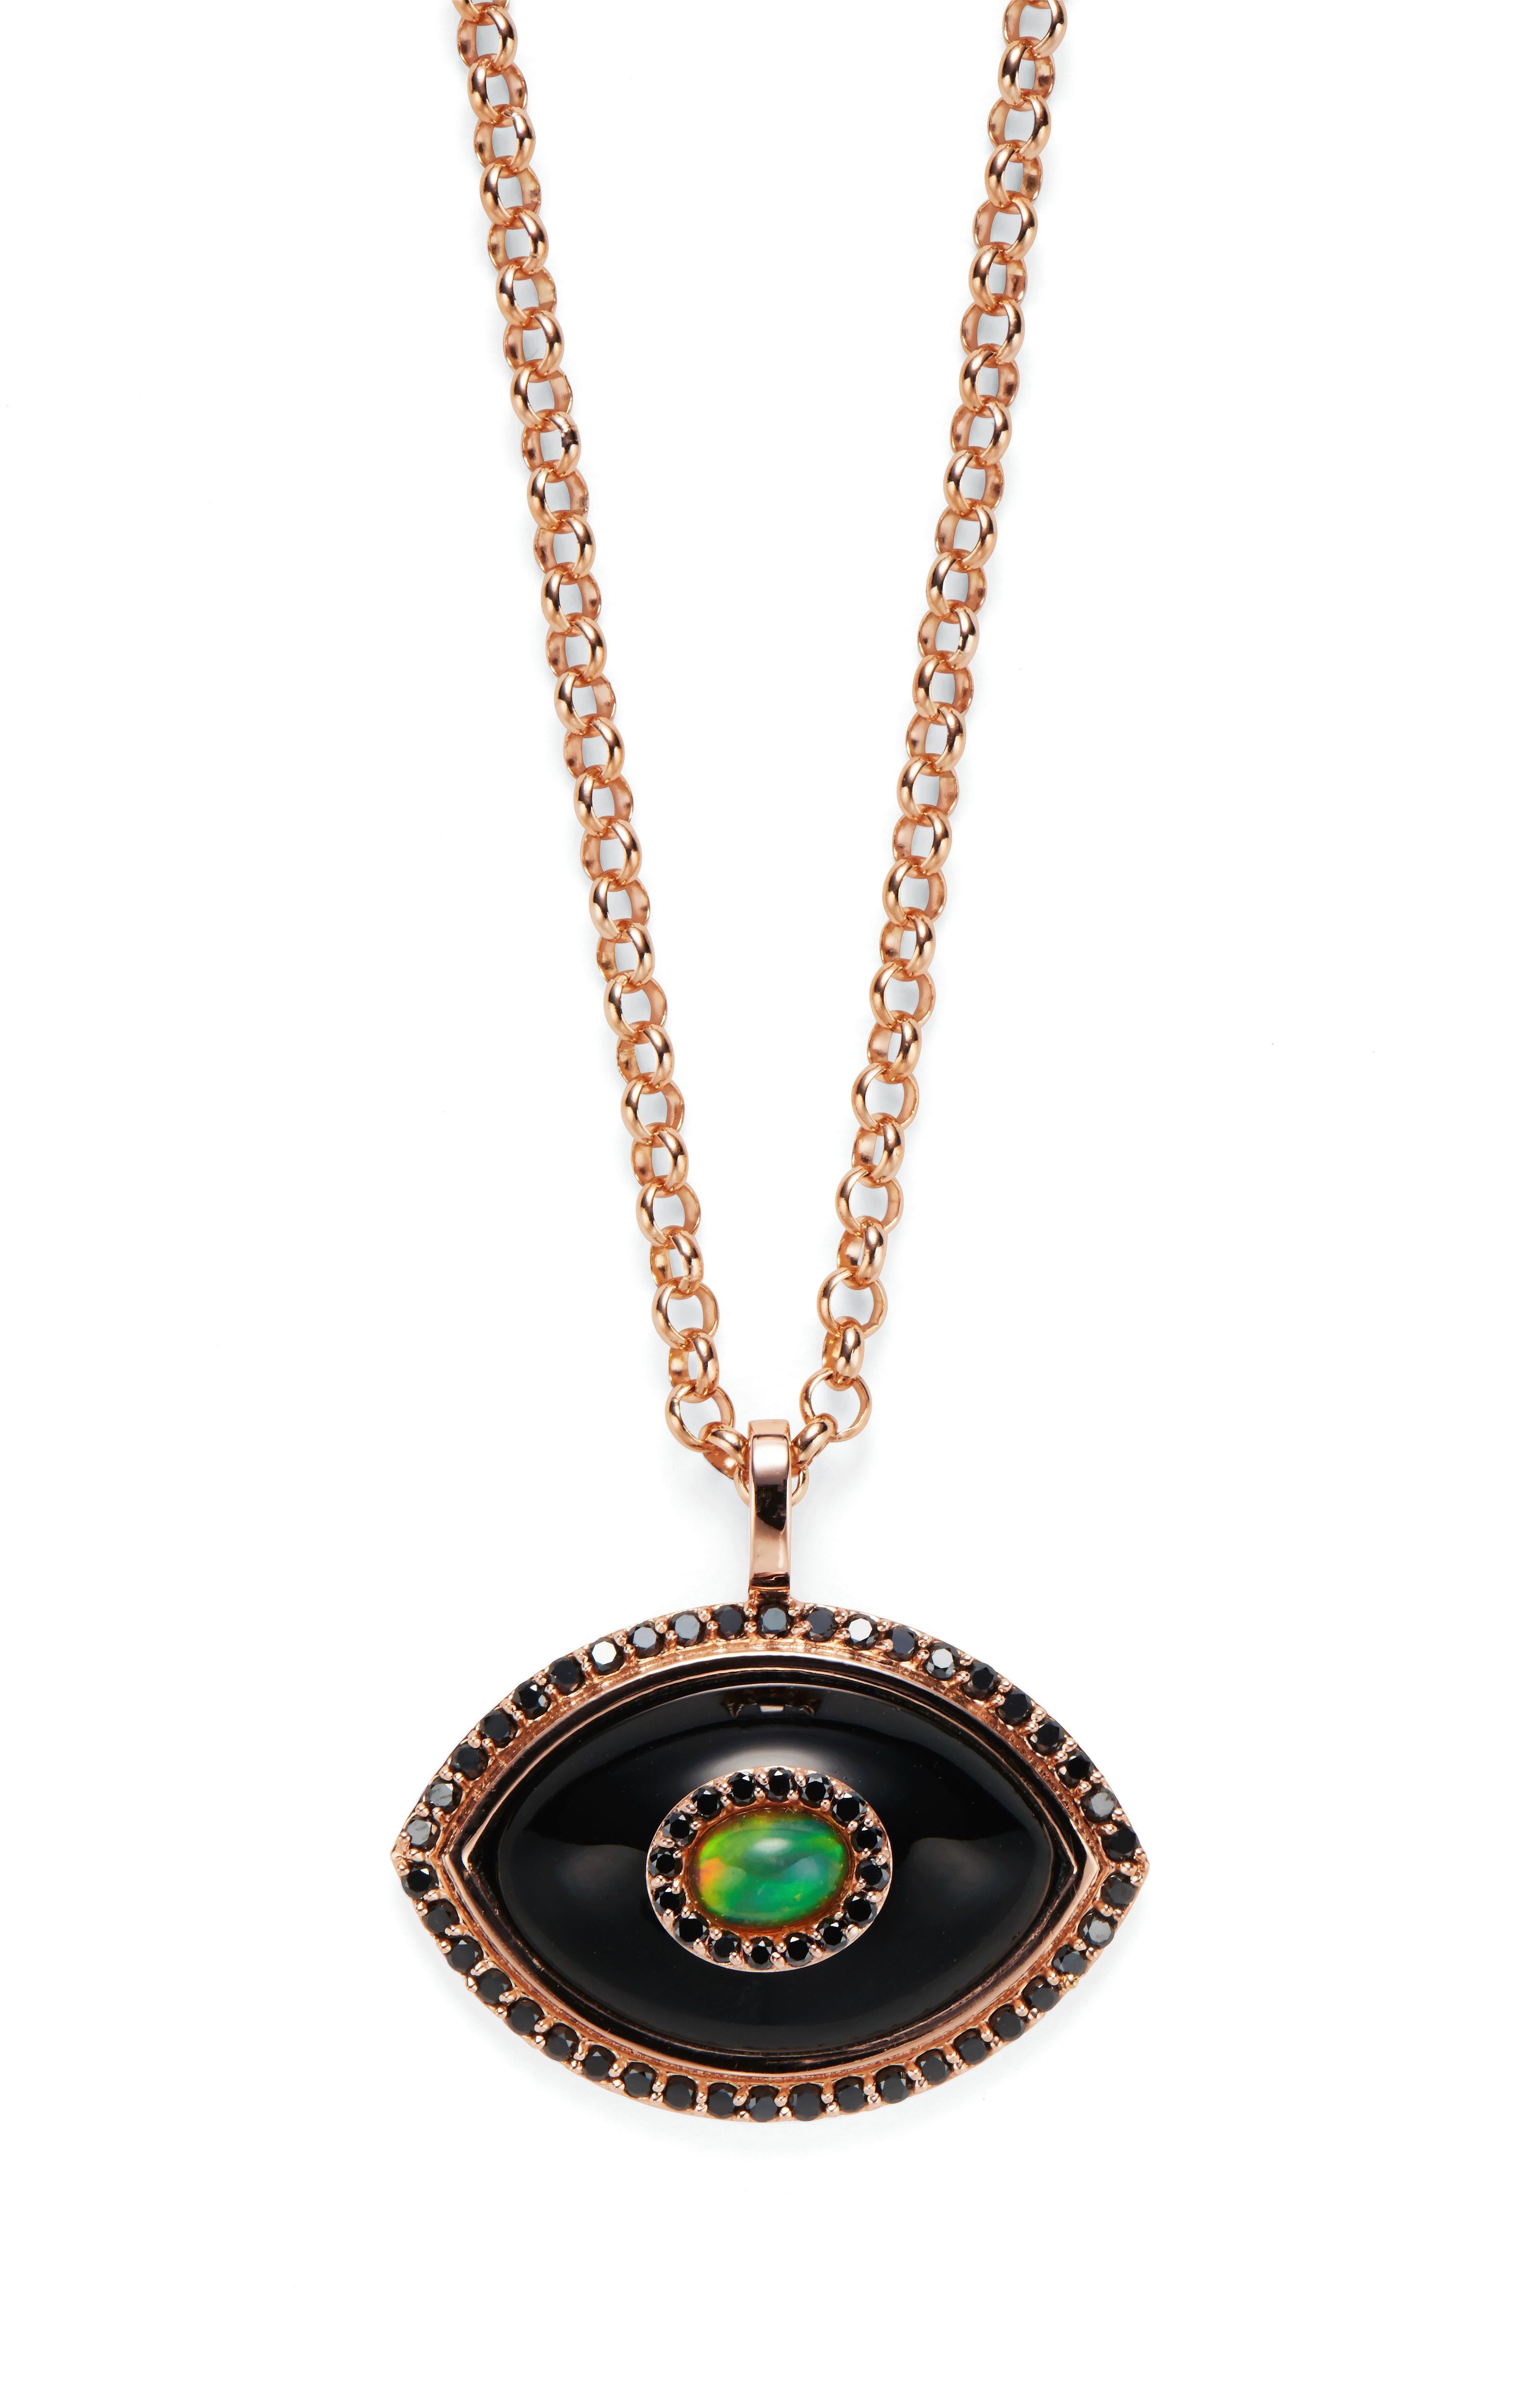 14k gold evil eye pendant